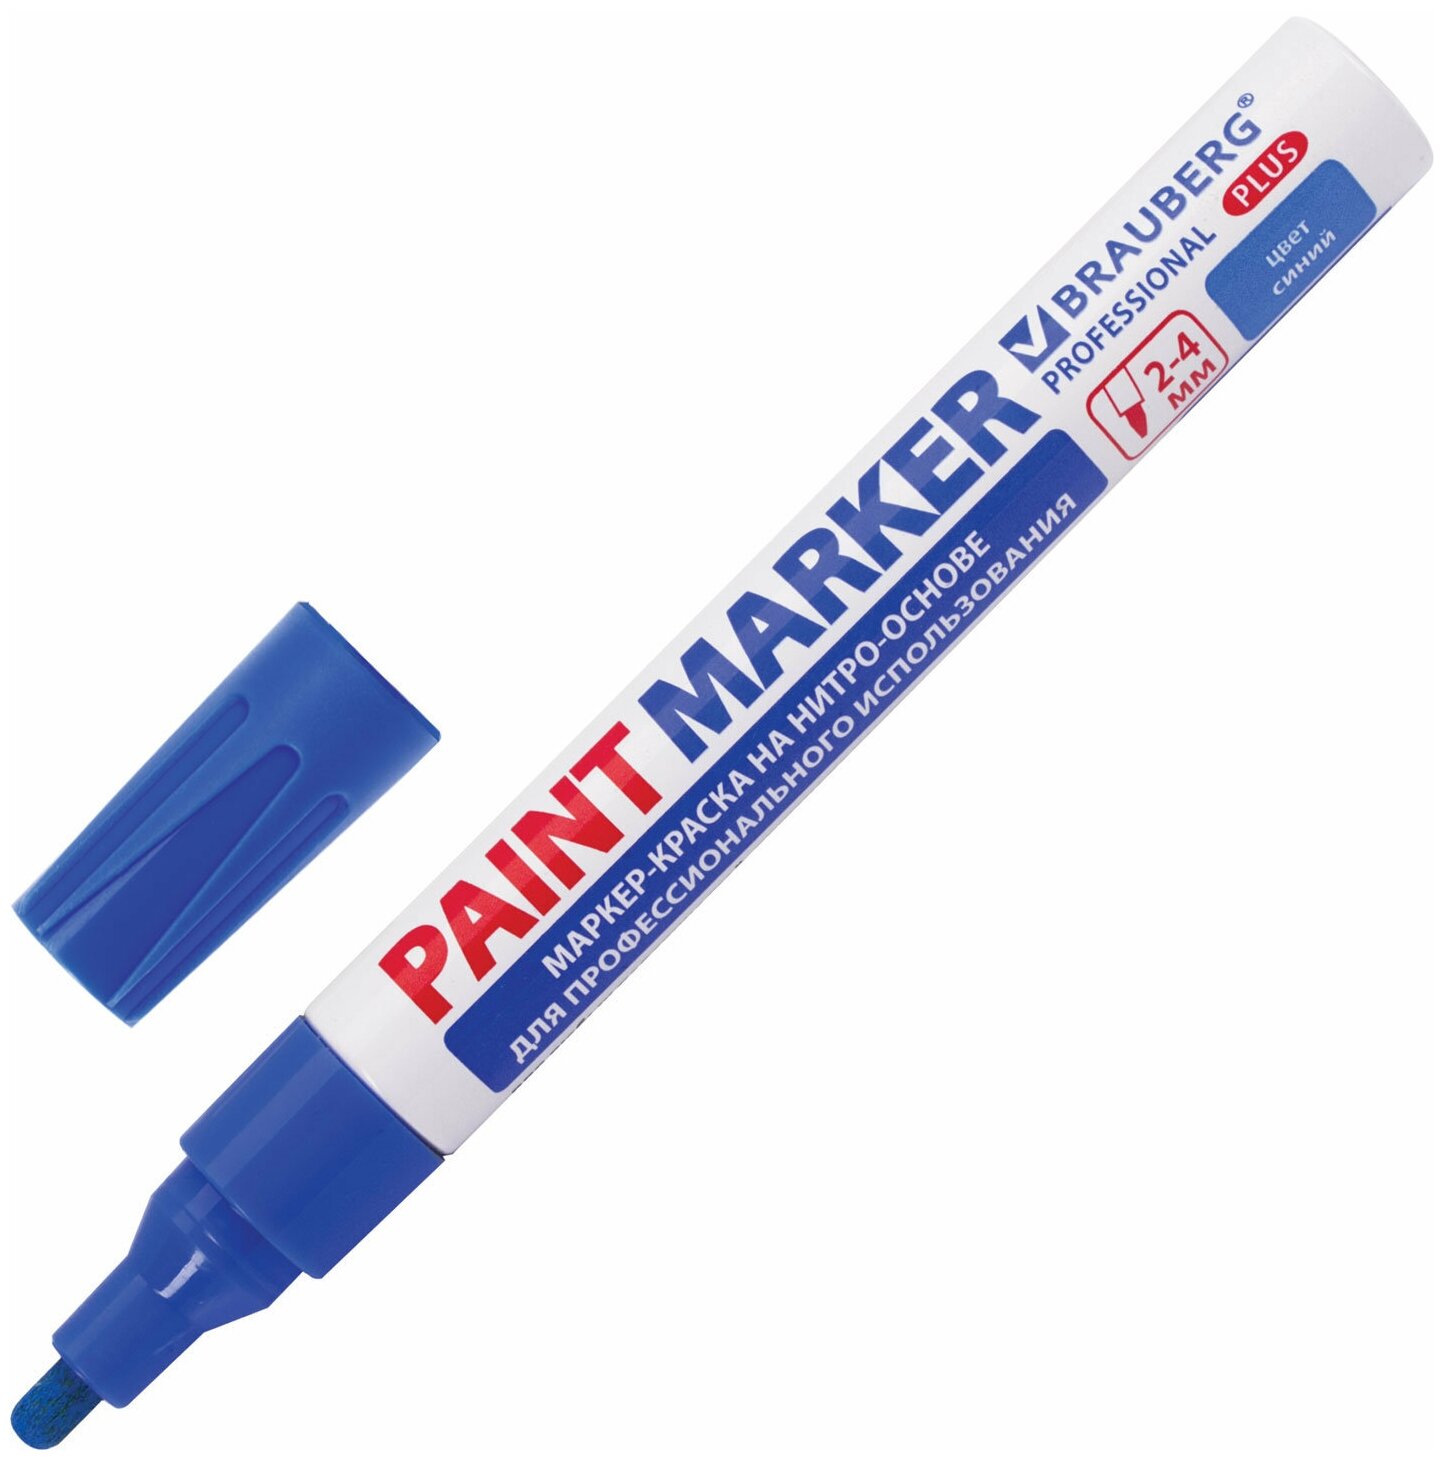 Маркер-краска лаковый (paint marker) 4 мм, синий, нитро-основа, алюминиевый корпус, BRAUBERG PROFESSIONAL PLUS, 151447 /Квант продажи 1 ед./